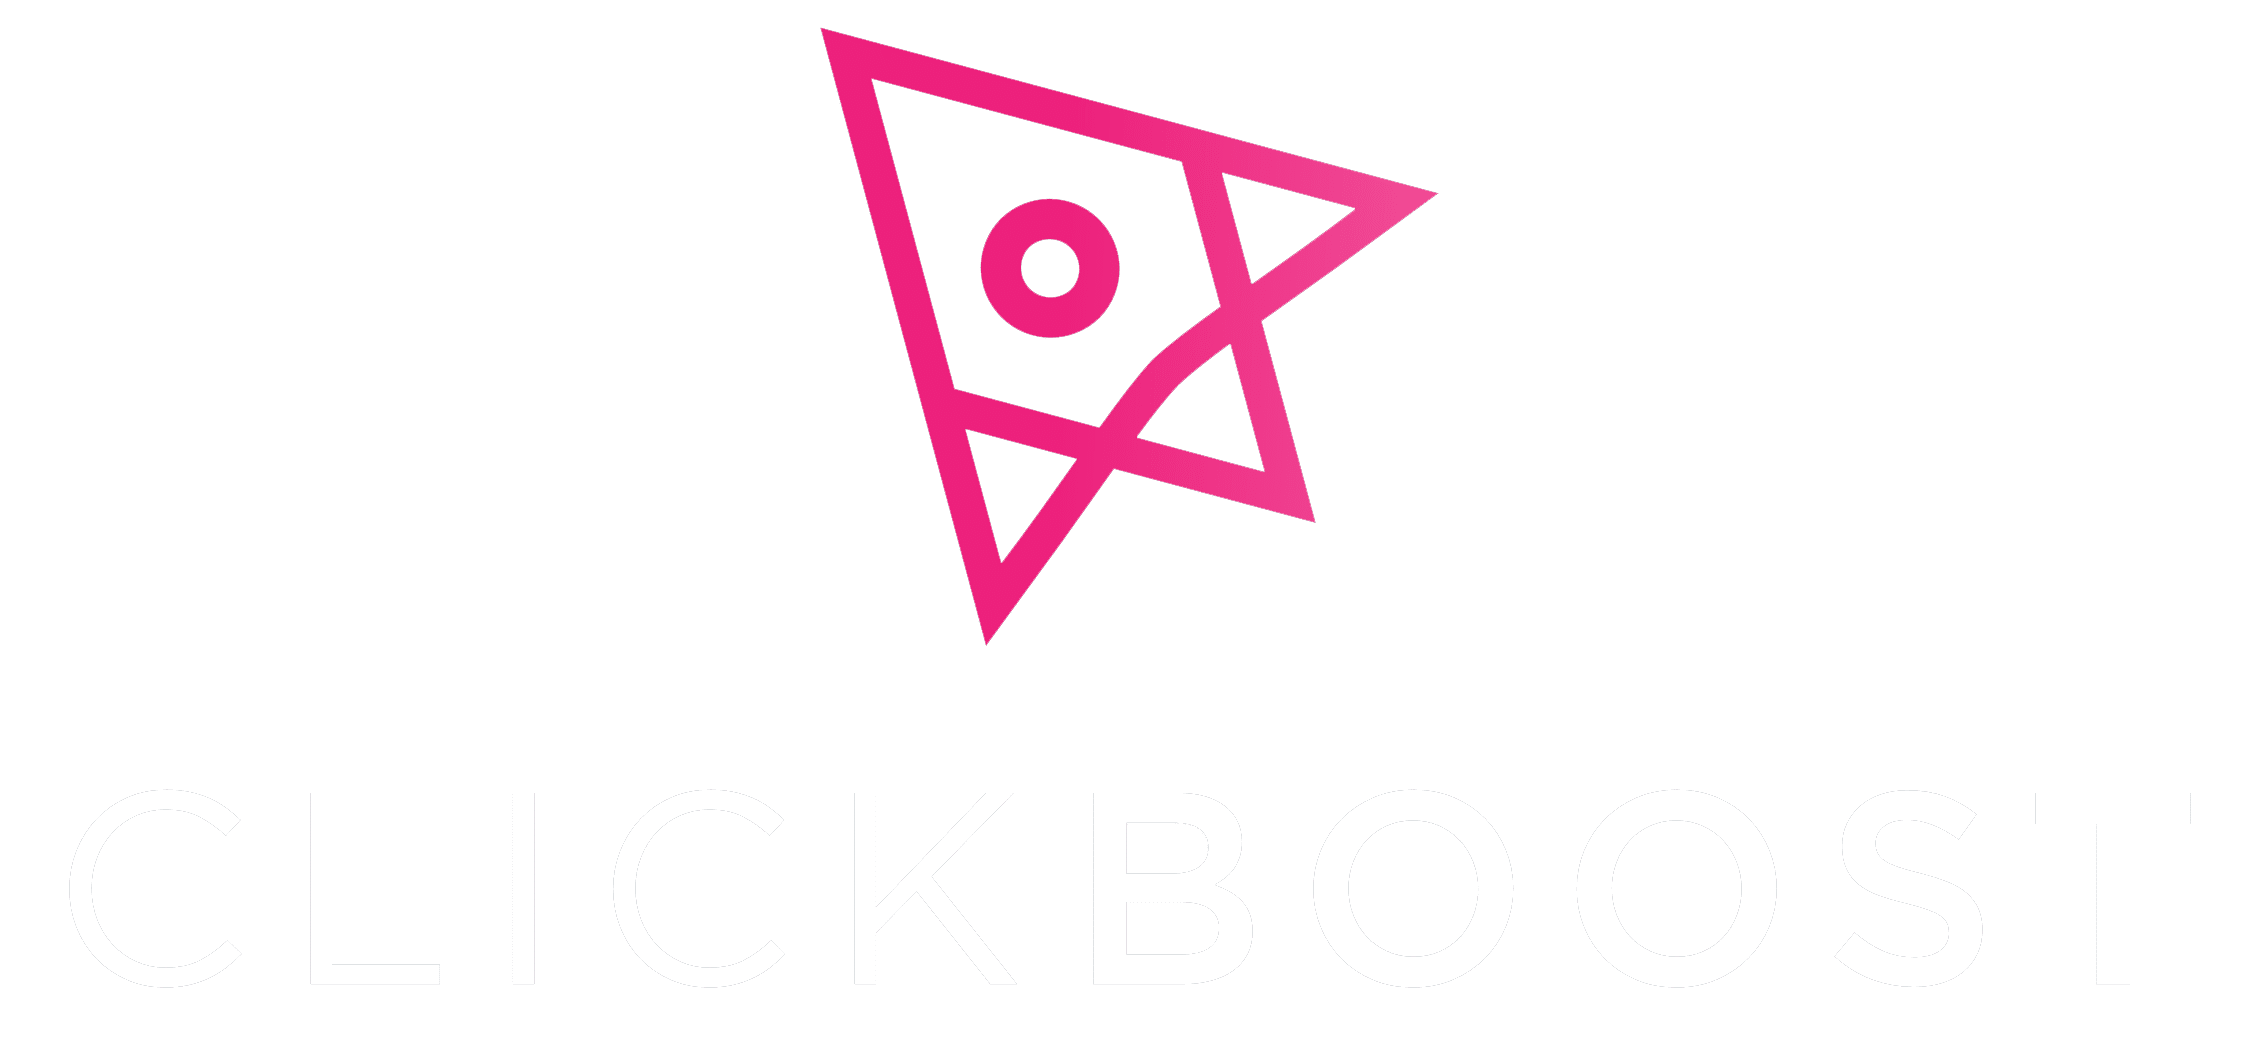 ClickBoost PPC Agency Glasgow